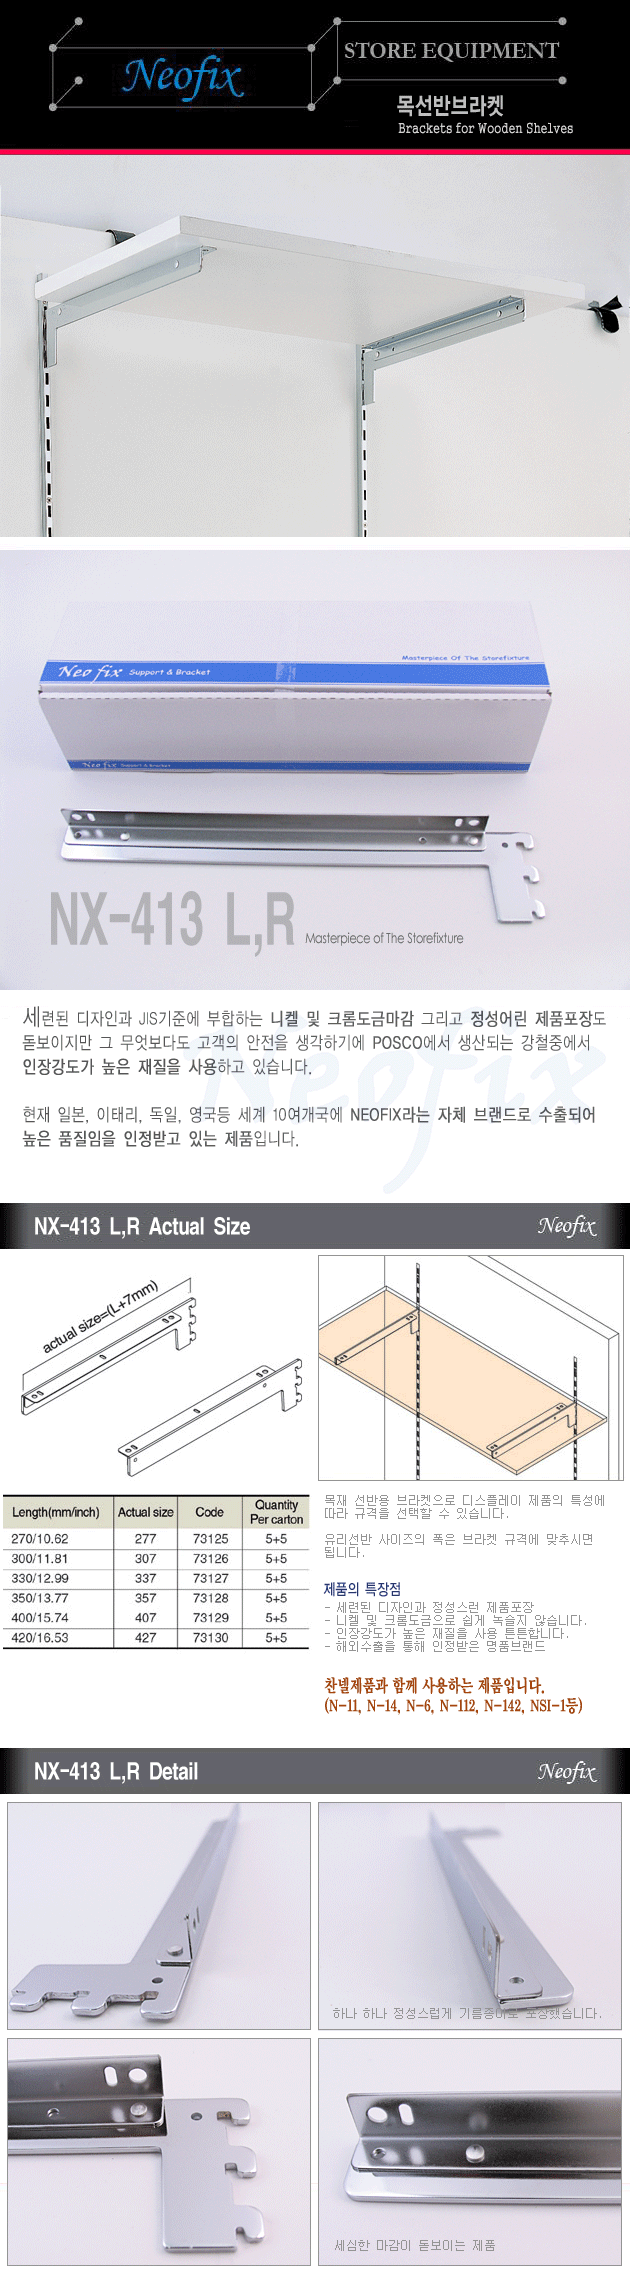 NX-413 L,R